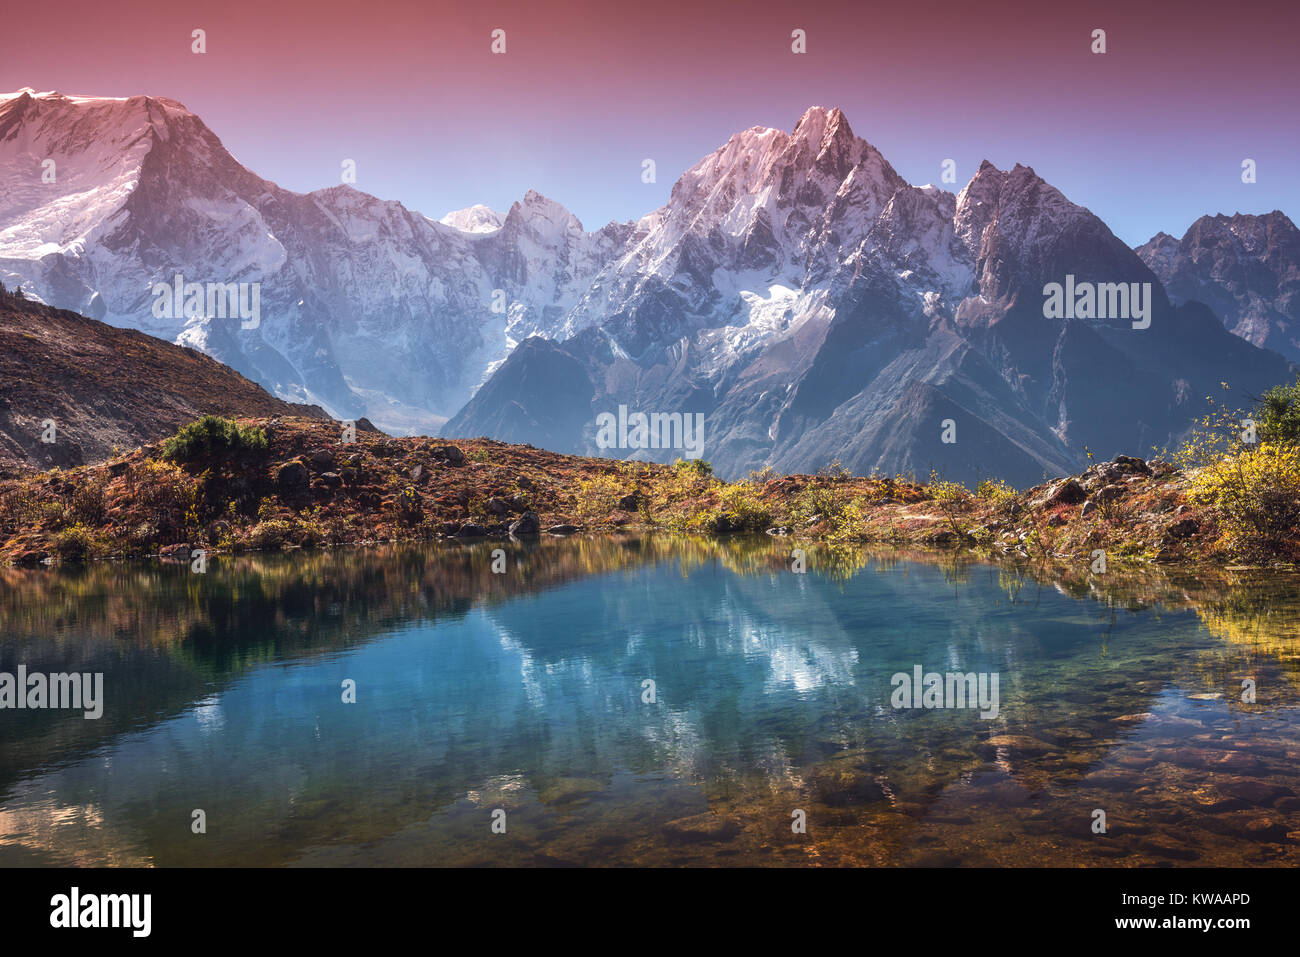 Schöne Landschaft mit hohen Berge mit schneebedeckten Gipfeln, Sky im See spiegeln. Berg Tal mit Reflexion im Wasser in Sunrise. Nepal. Bin Stockfoto